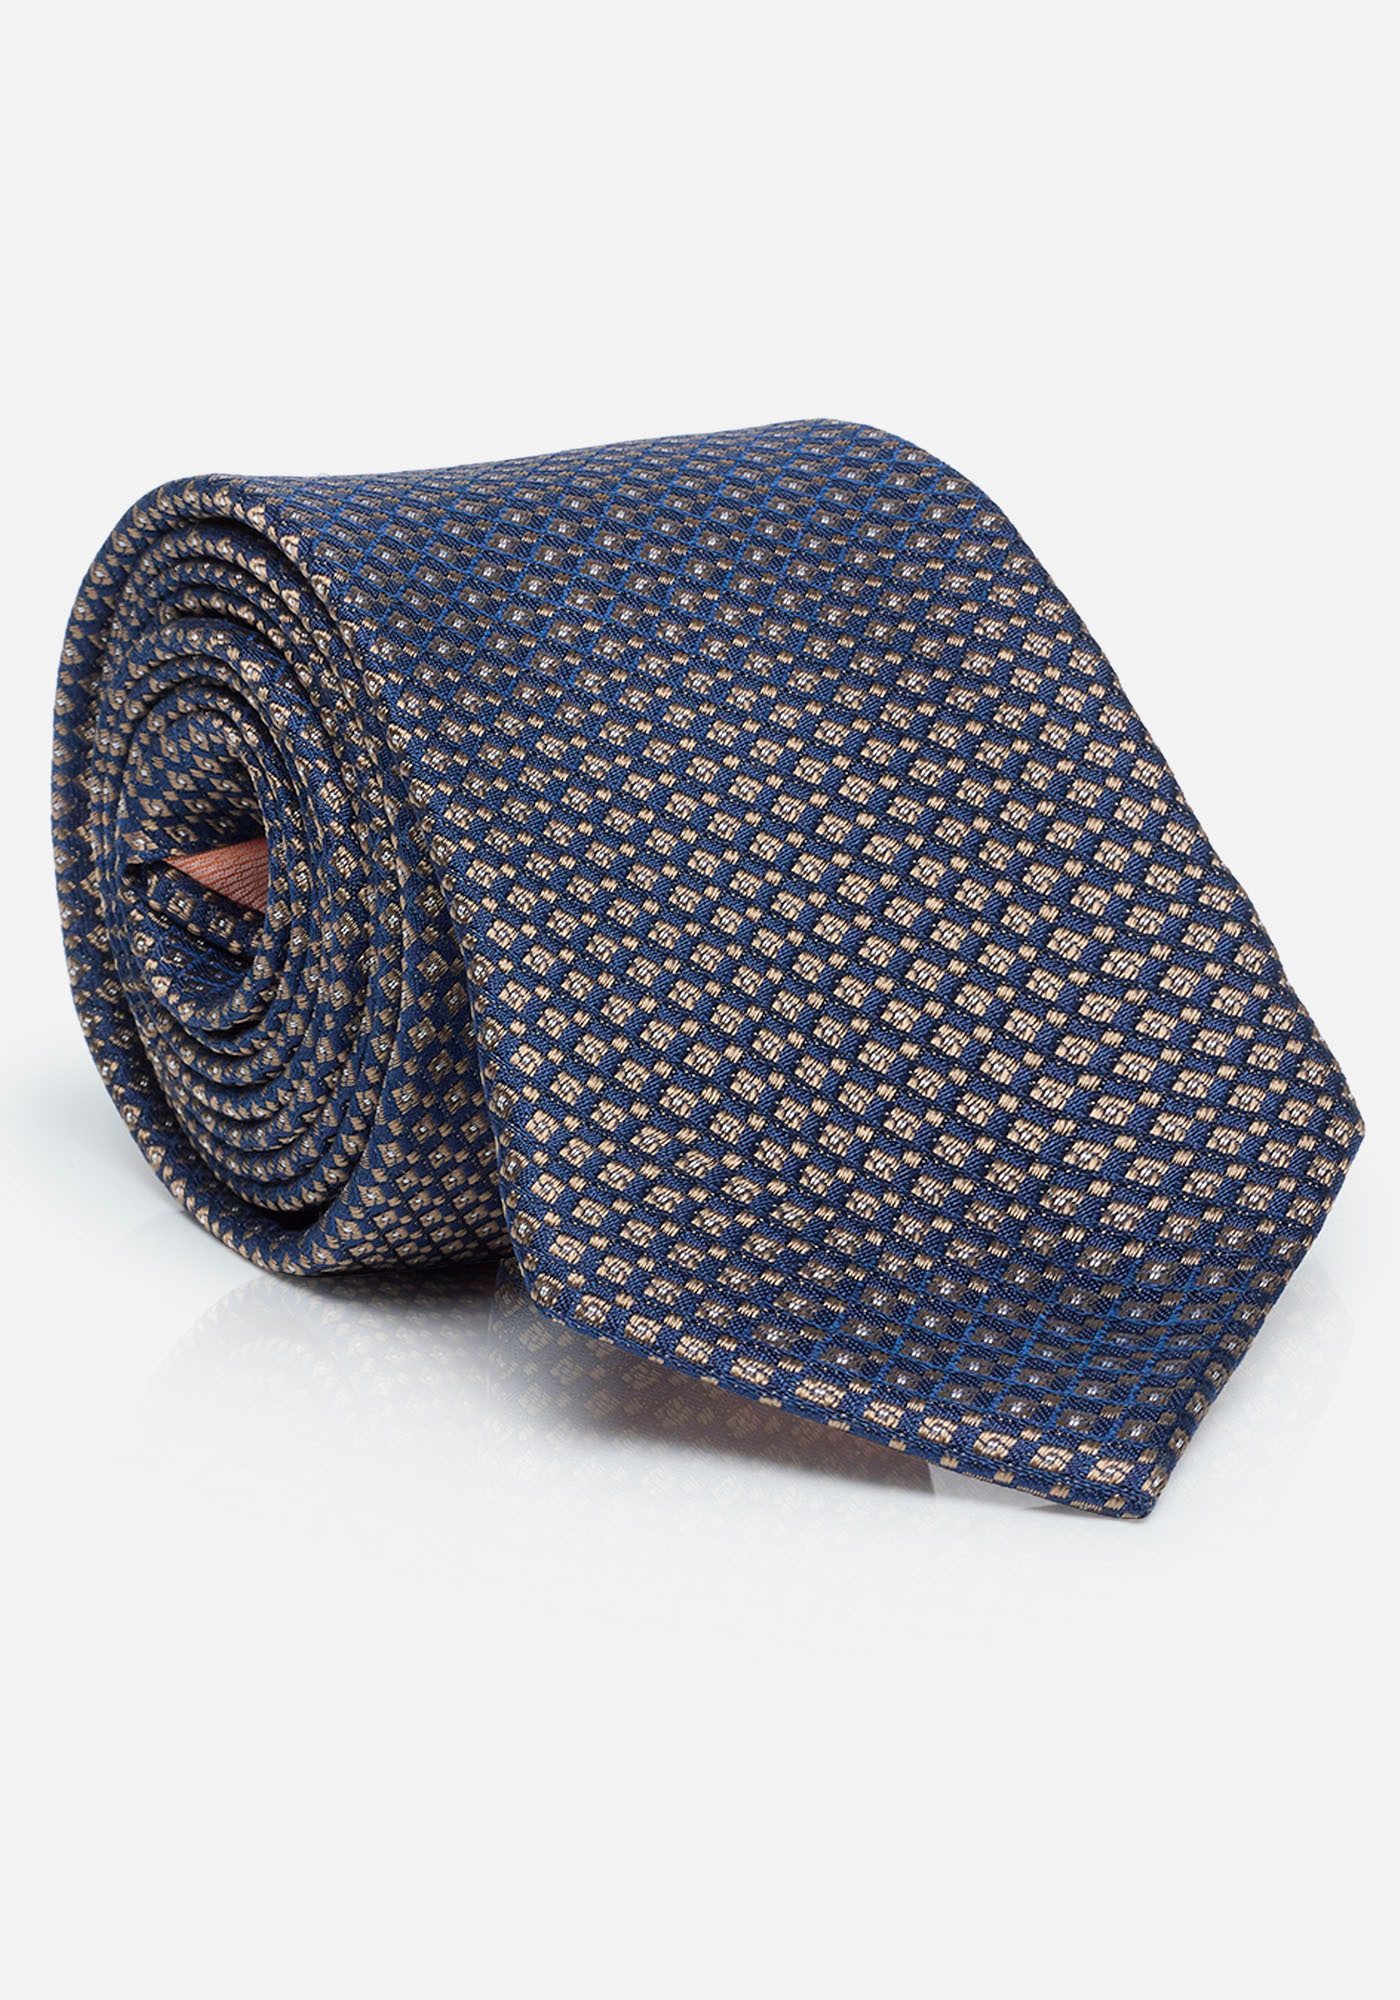 MONTI Krawatte LIANO mit Wolleinlage für angenehmes Tragegefühl und Formstabilität